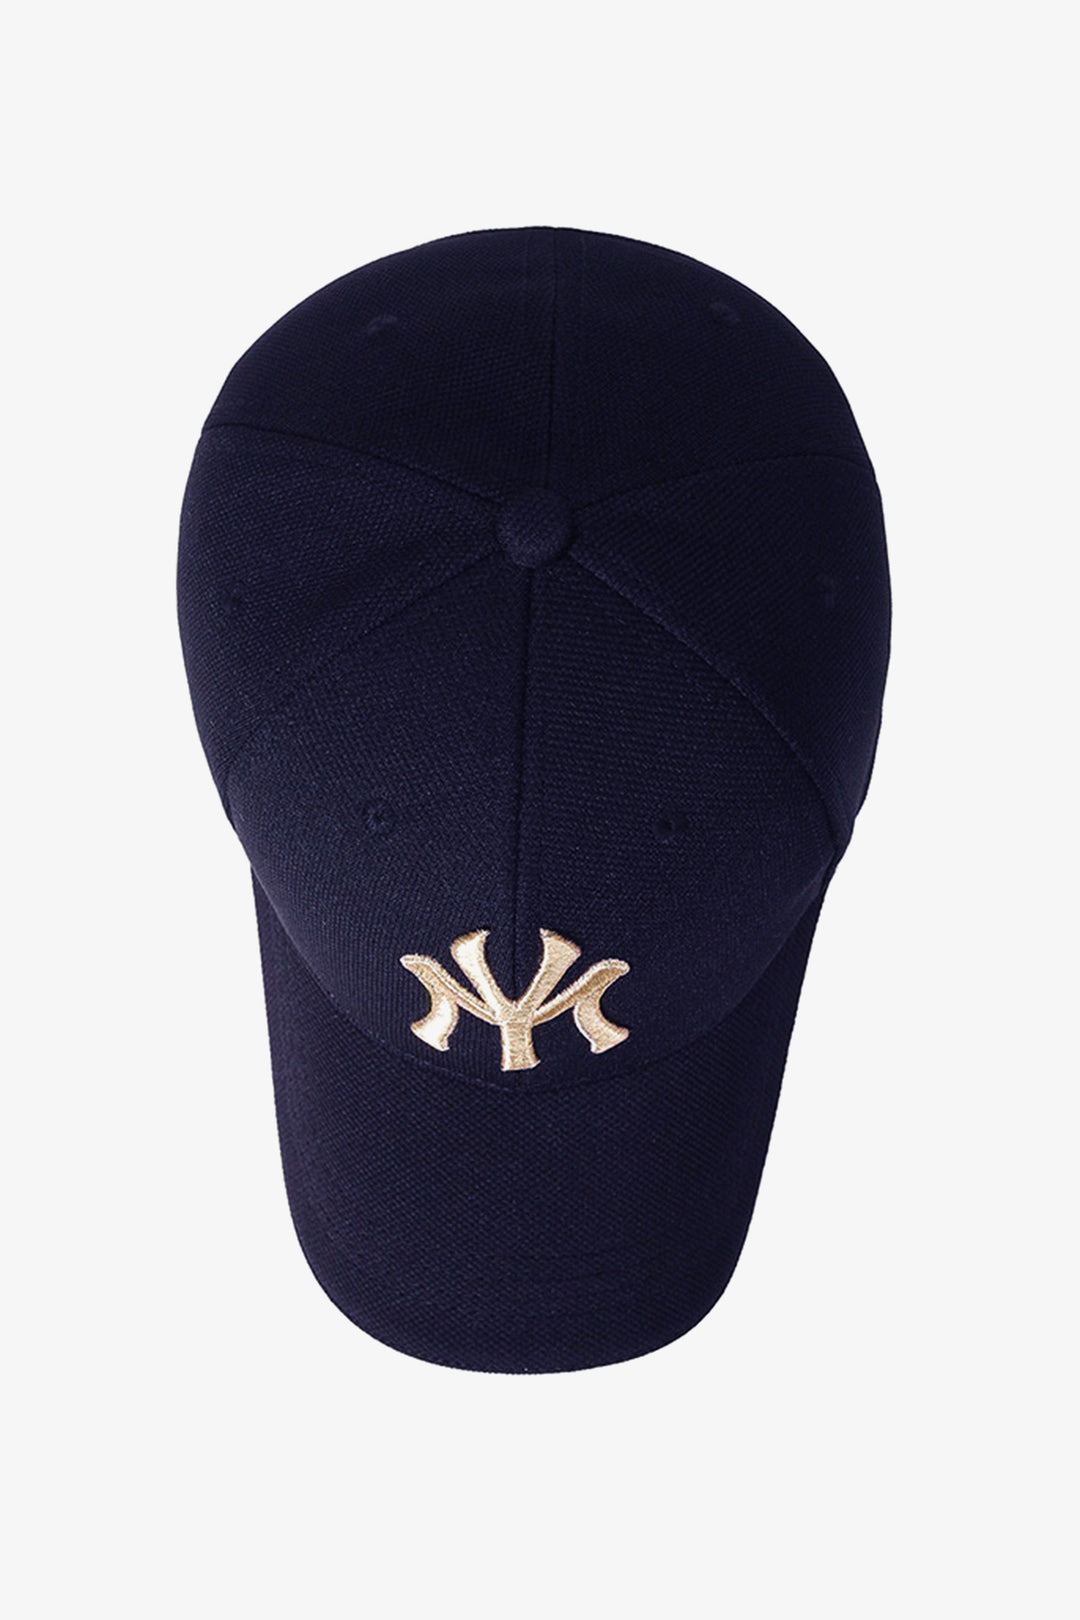 NY Classic Navy Blue Baseball Cap - S23 - MCP083R